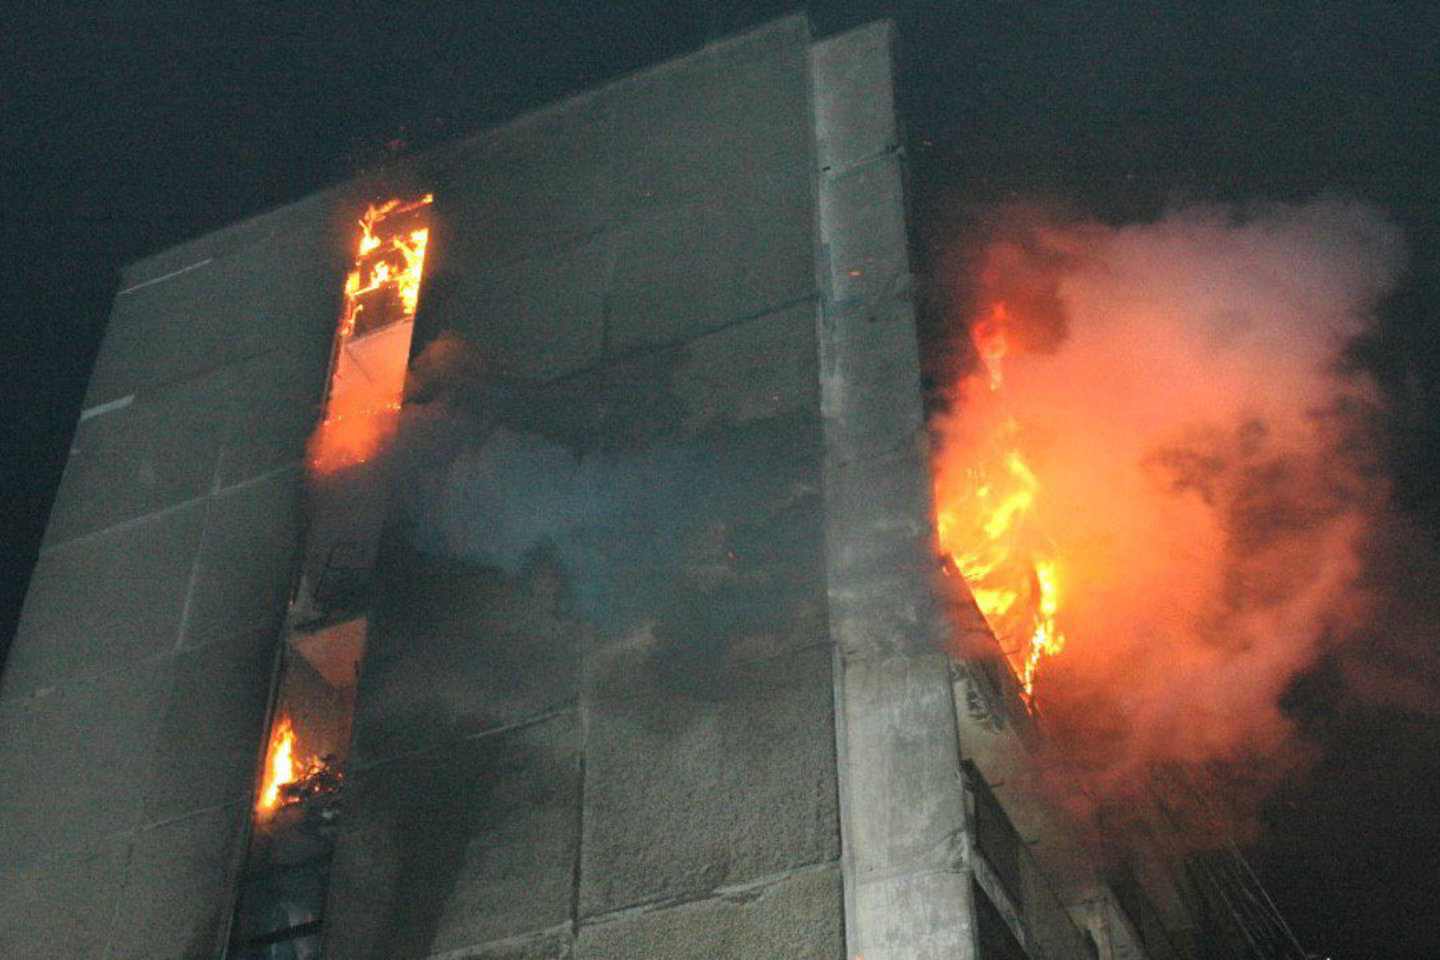  Vilniaus daugiabutyje gaisrą sukėlęs ir 6 žmones pražudęs vyras sulaukė griežtesnės bausmės.<br> A.Vaitkevičiaus nuotr.